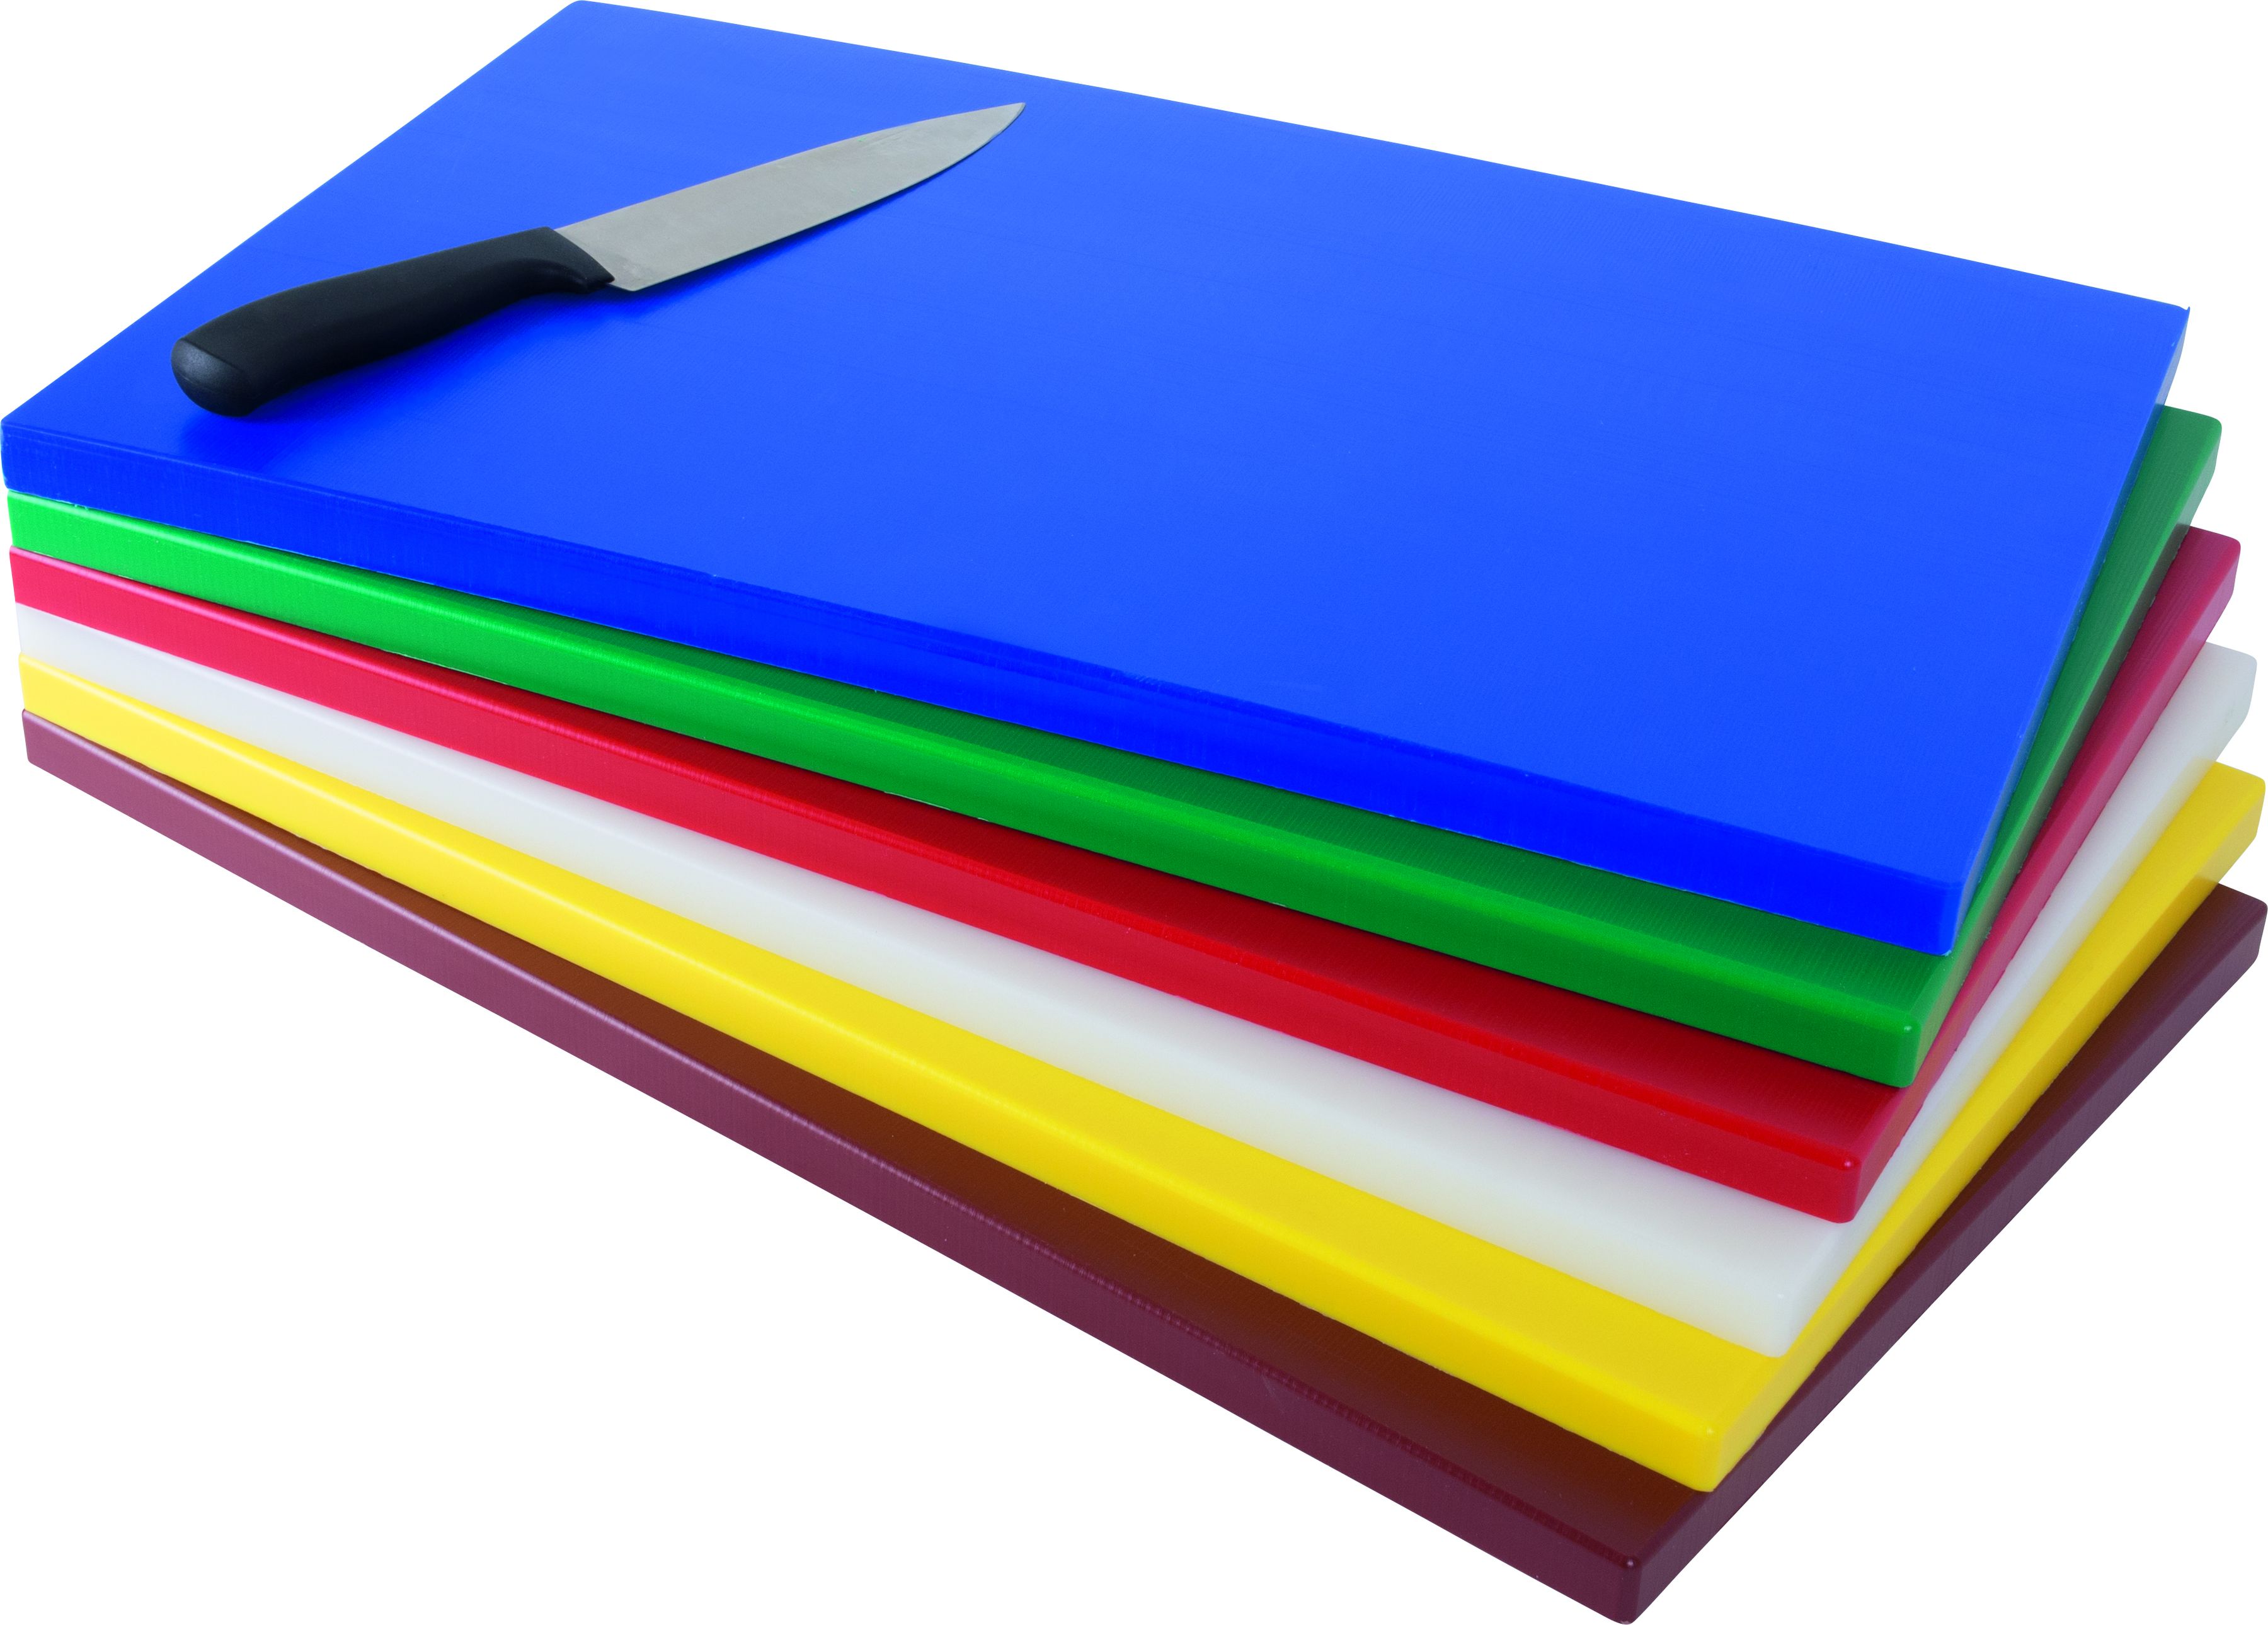 Polyethylene Cutting Board model GN blue